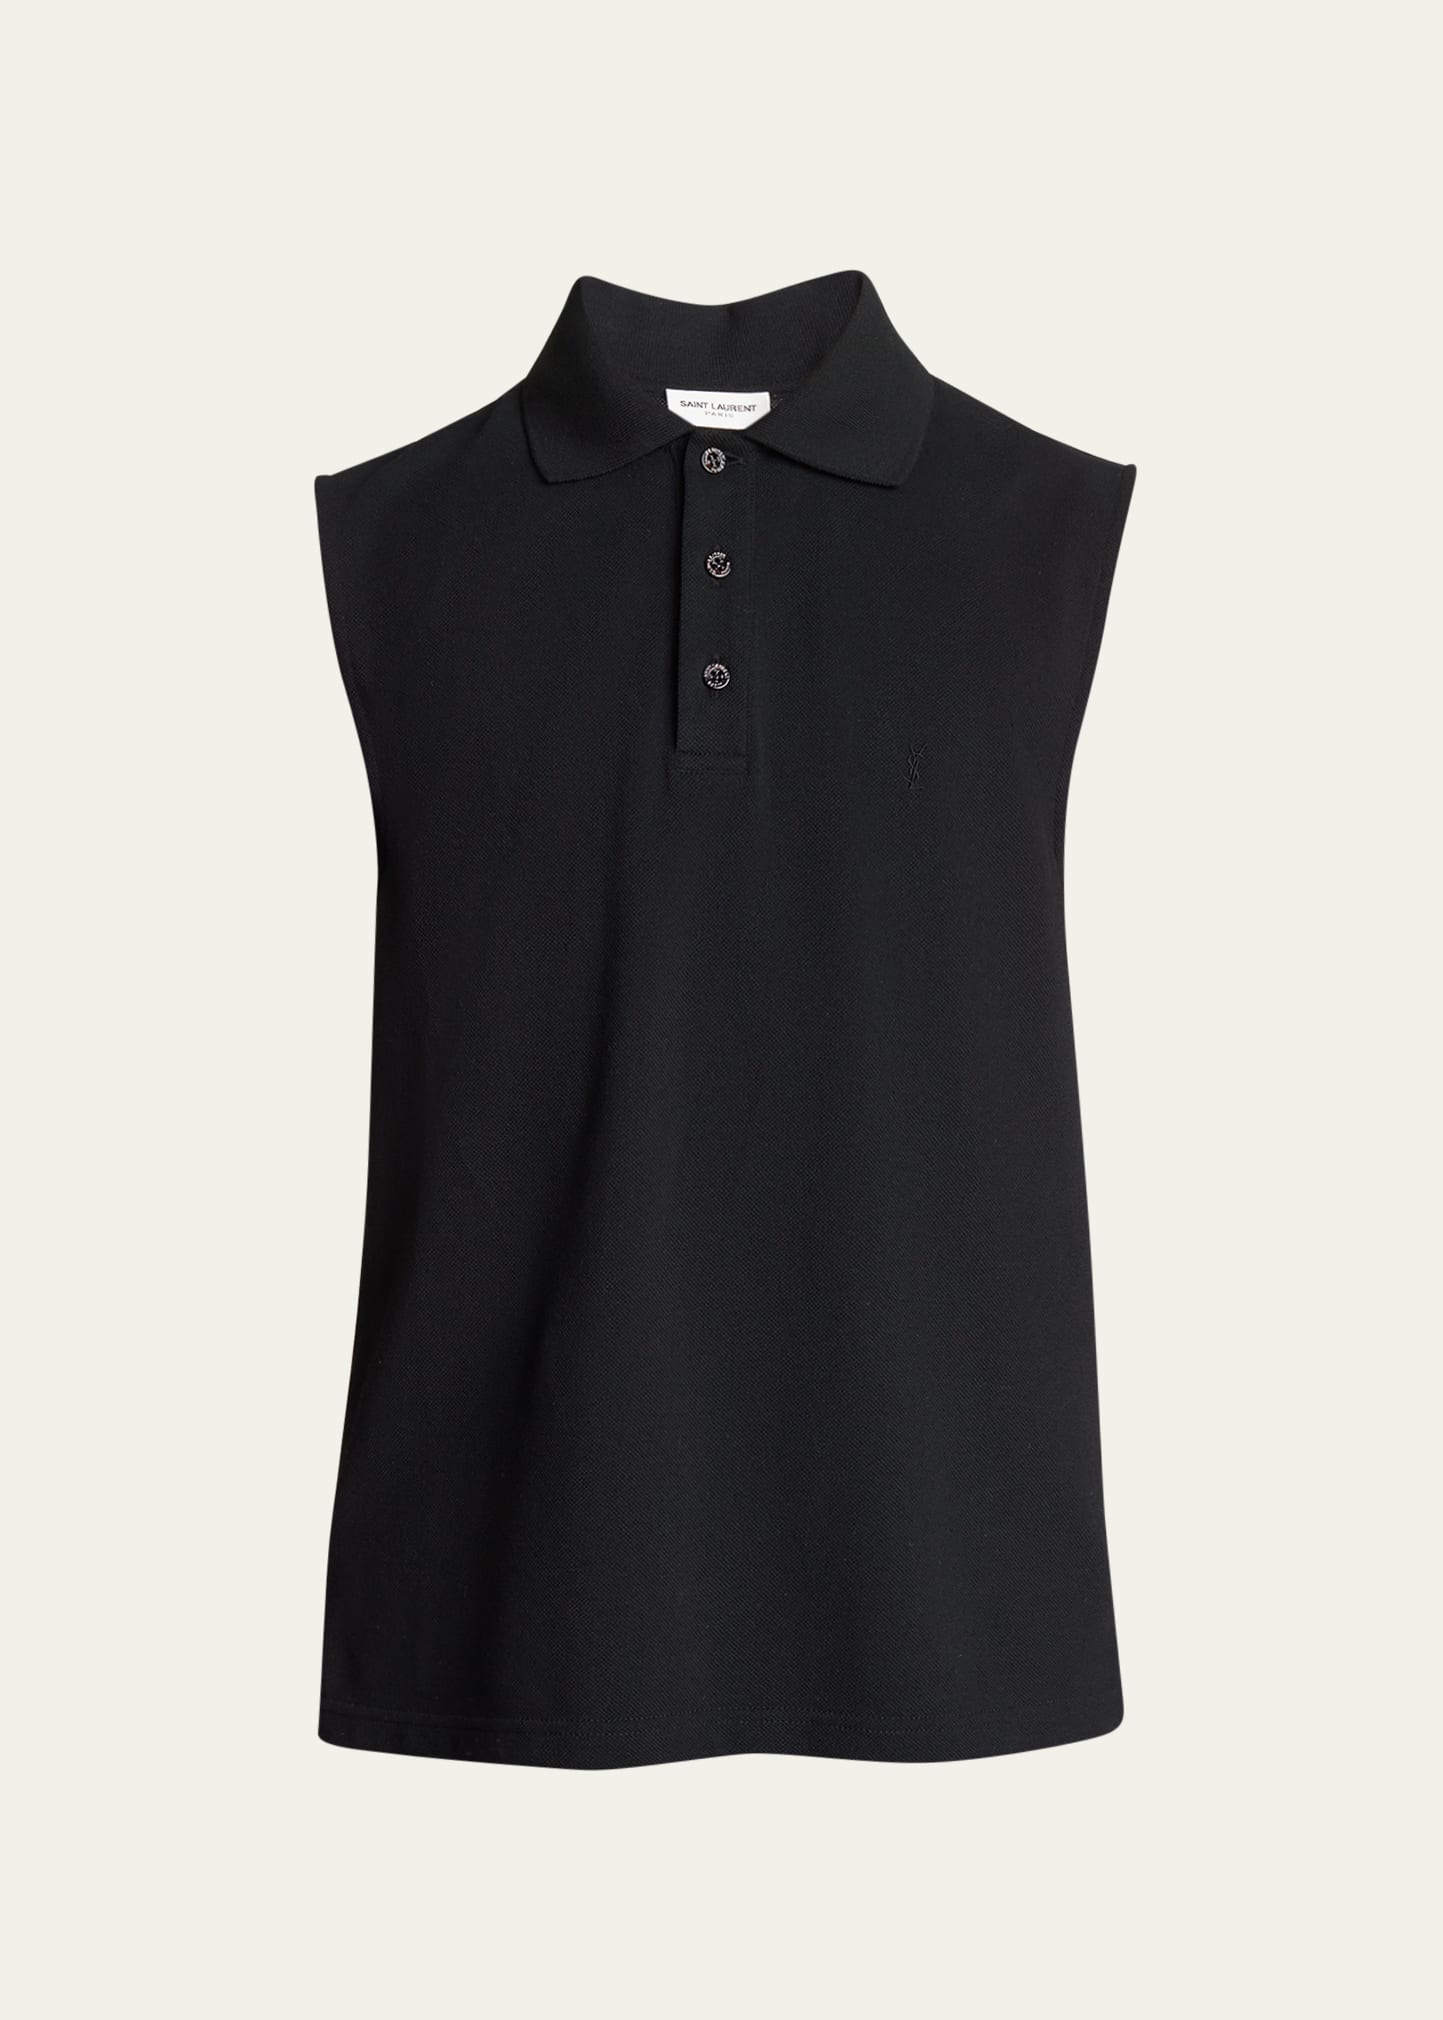 Saint Laurent Men's Sleeveless Pique Polo Shirt In Black